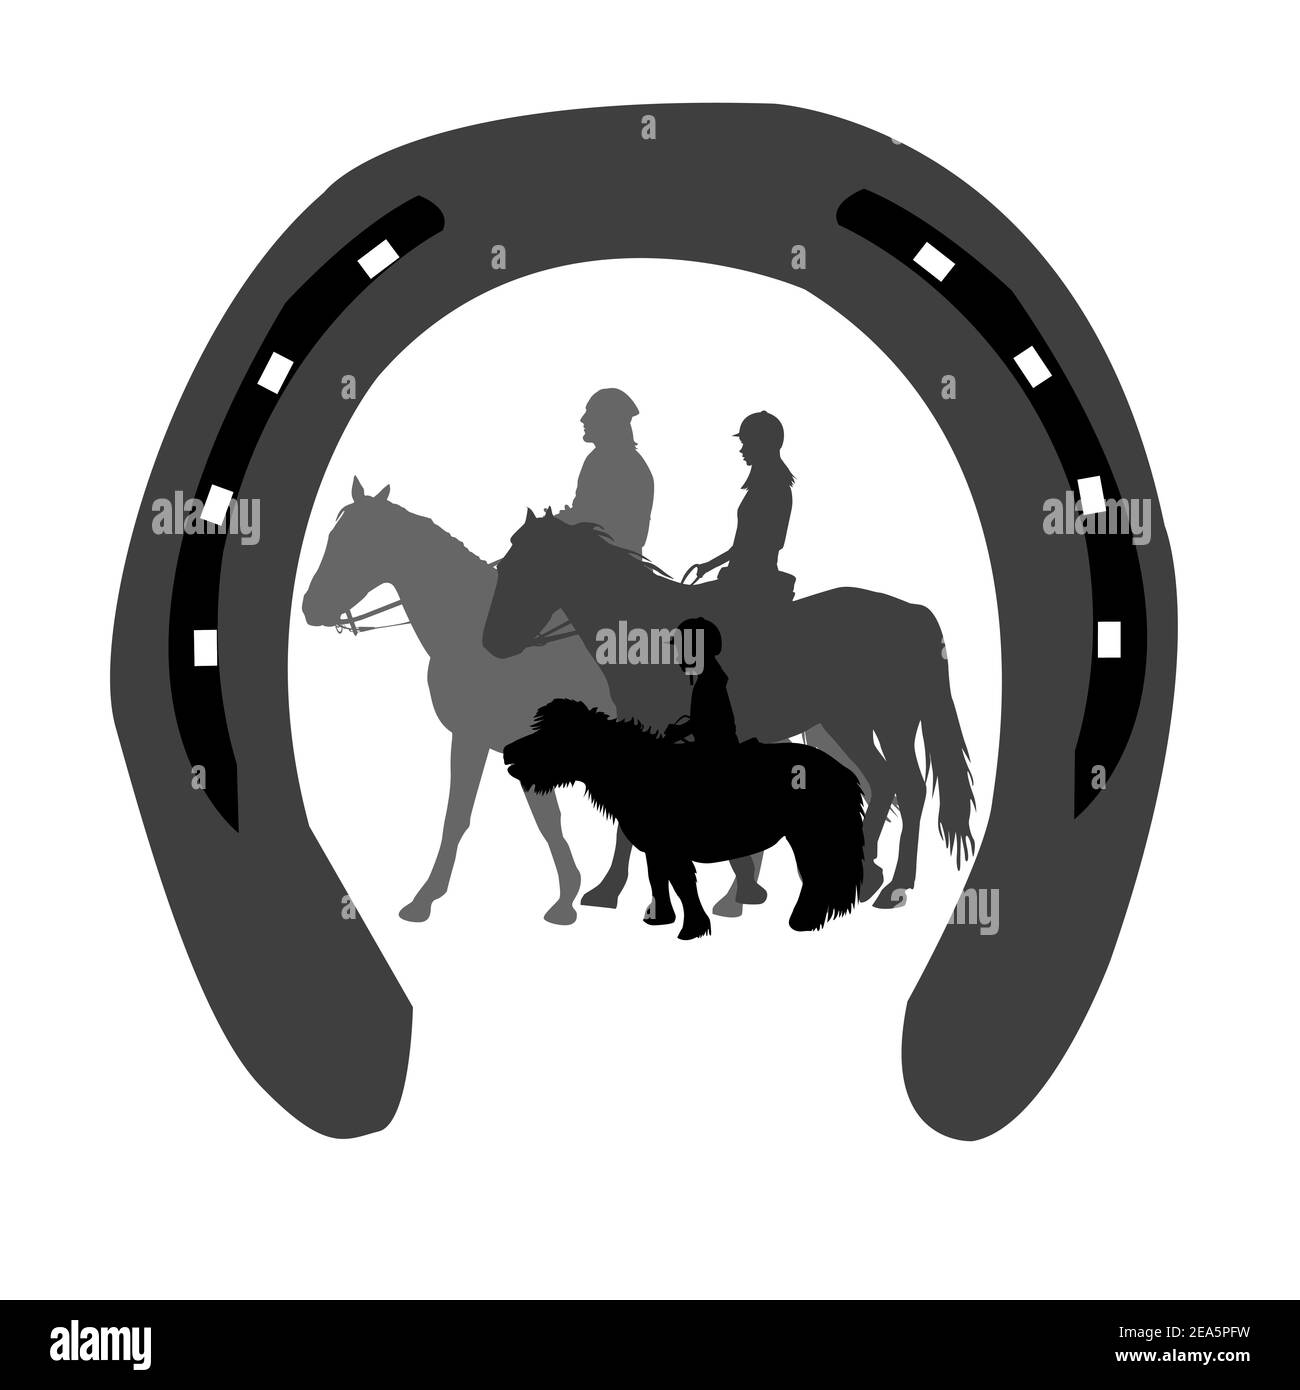 Emblem Reitclub mit Silhouetten von Reitern aller Altersgruppen In einem Hufeisen Stock Vektor